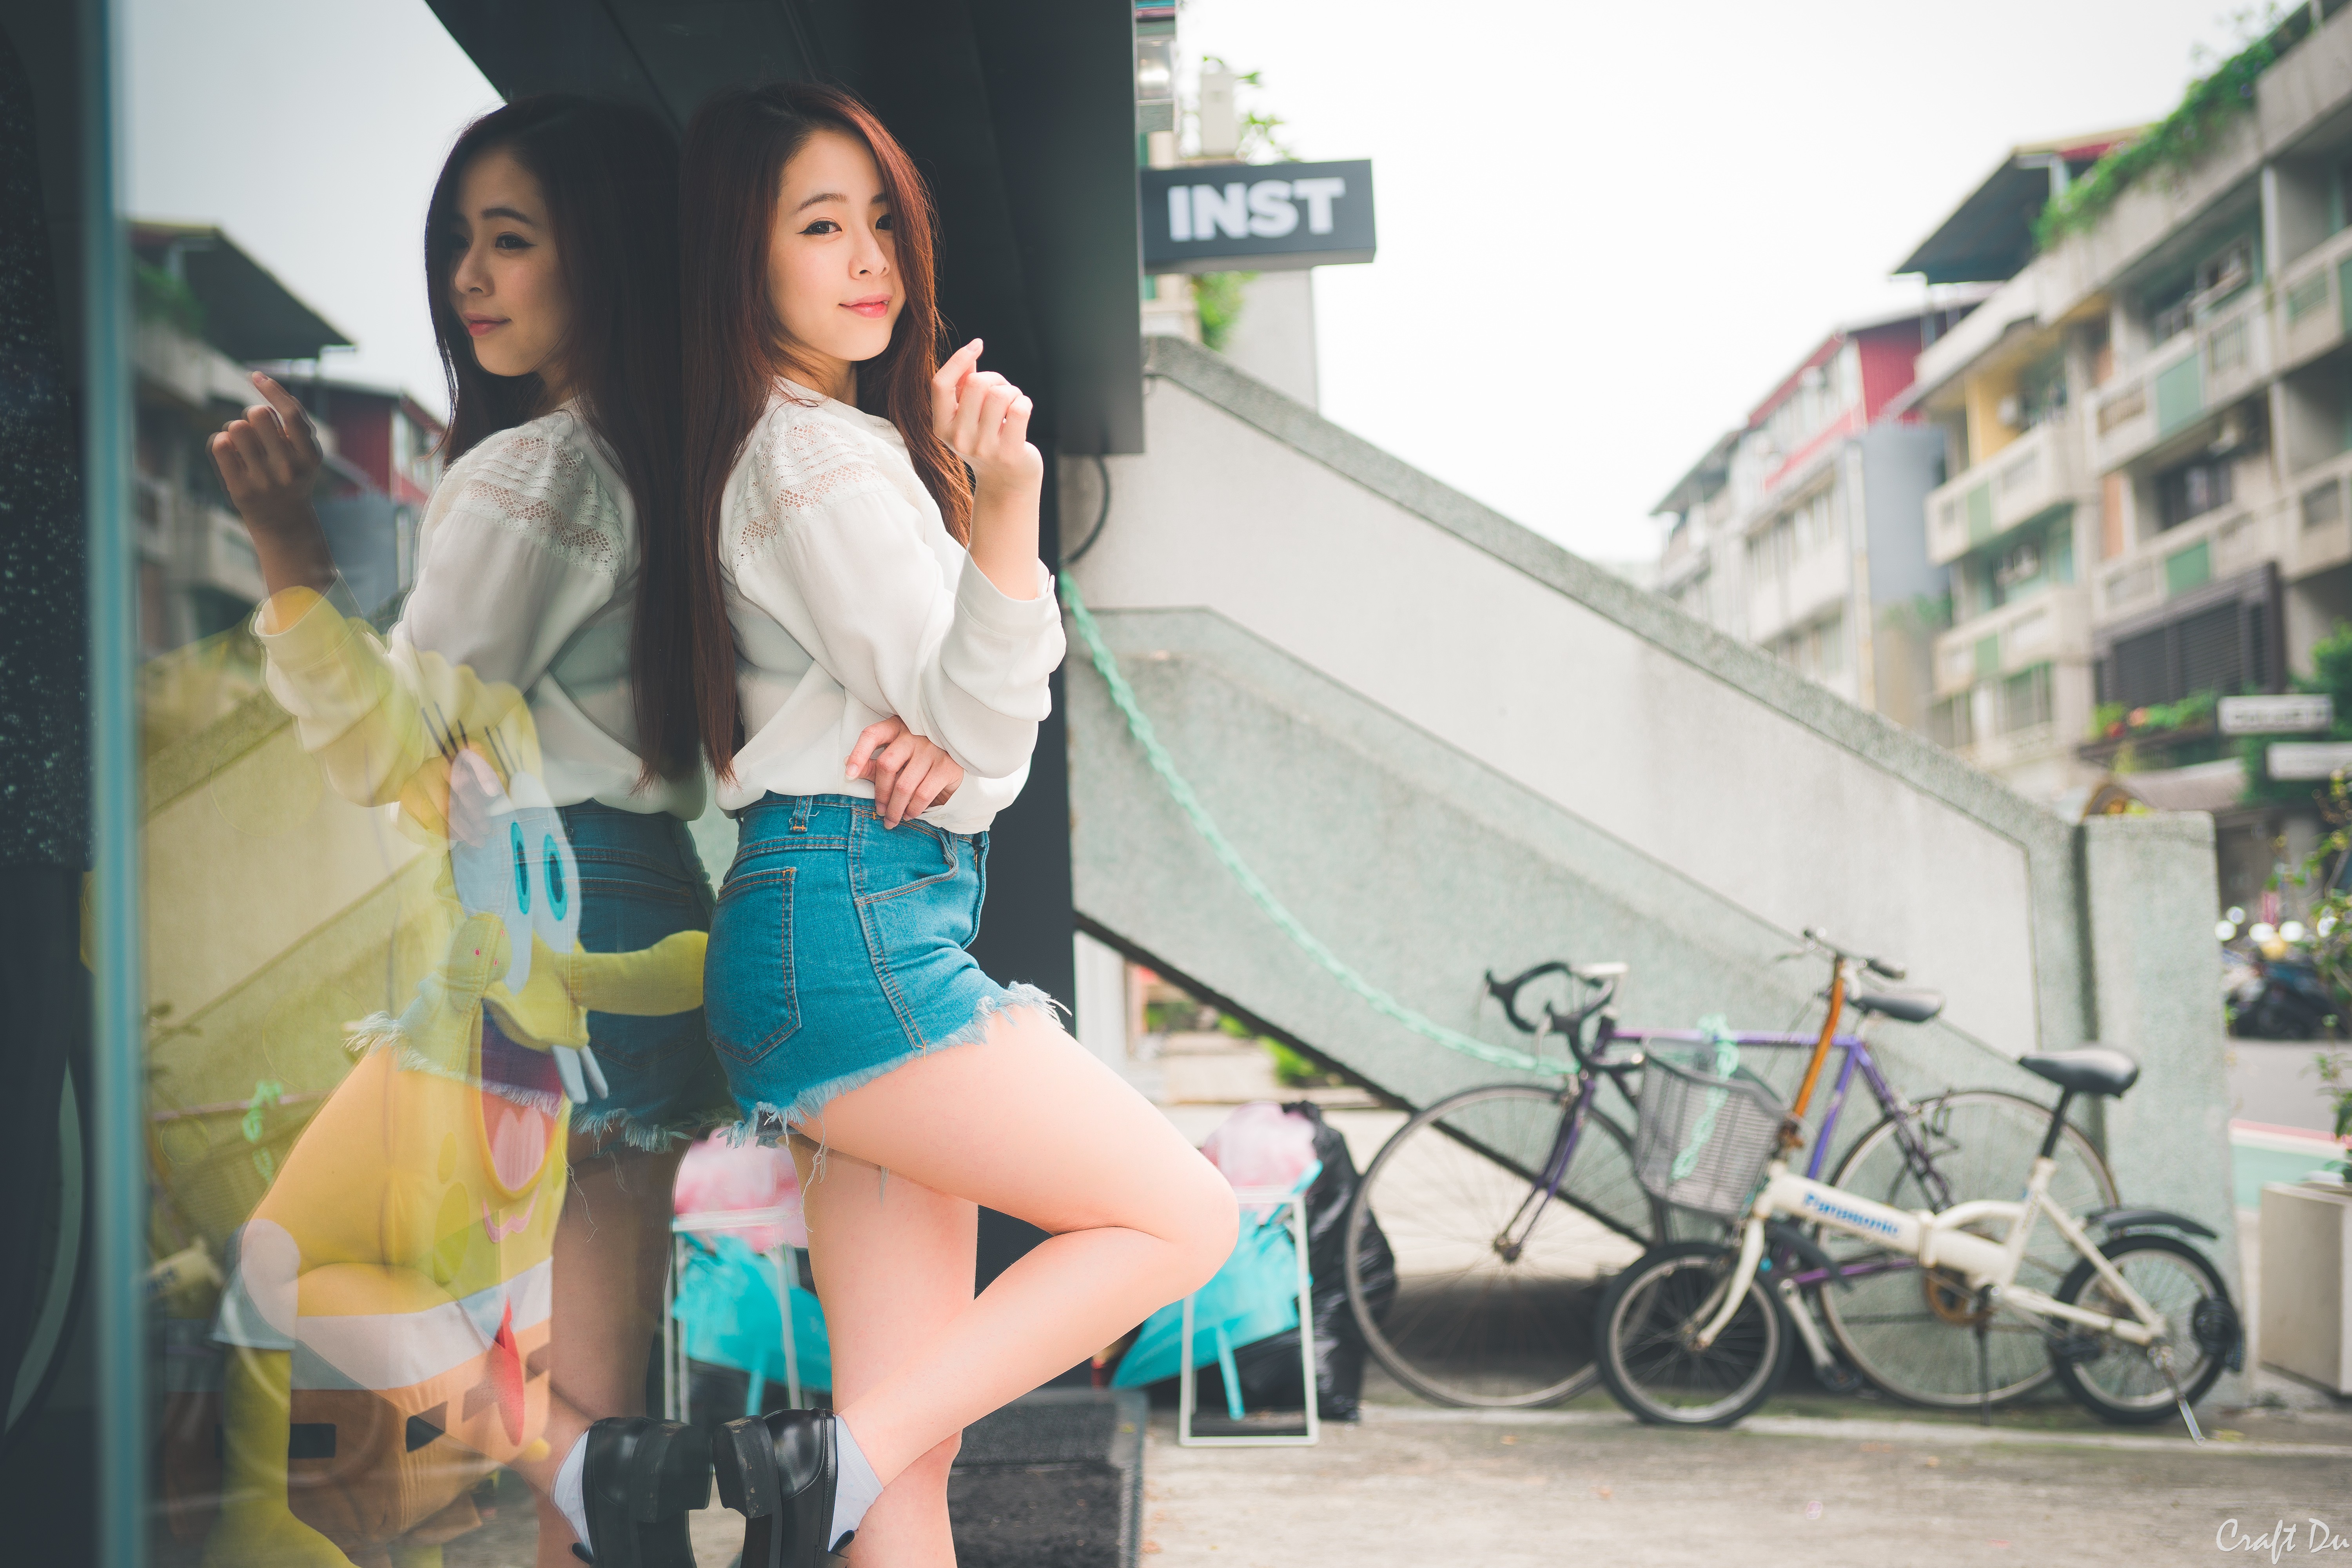 People 6000x4000 women Asian model urban legs reflection women outdoors